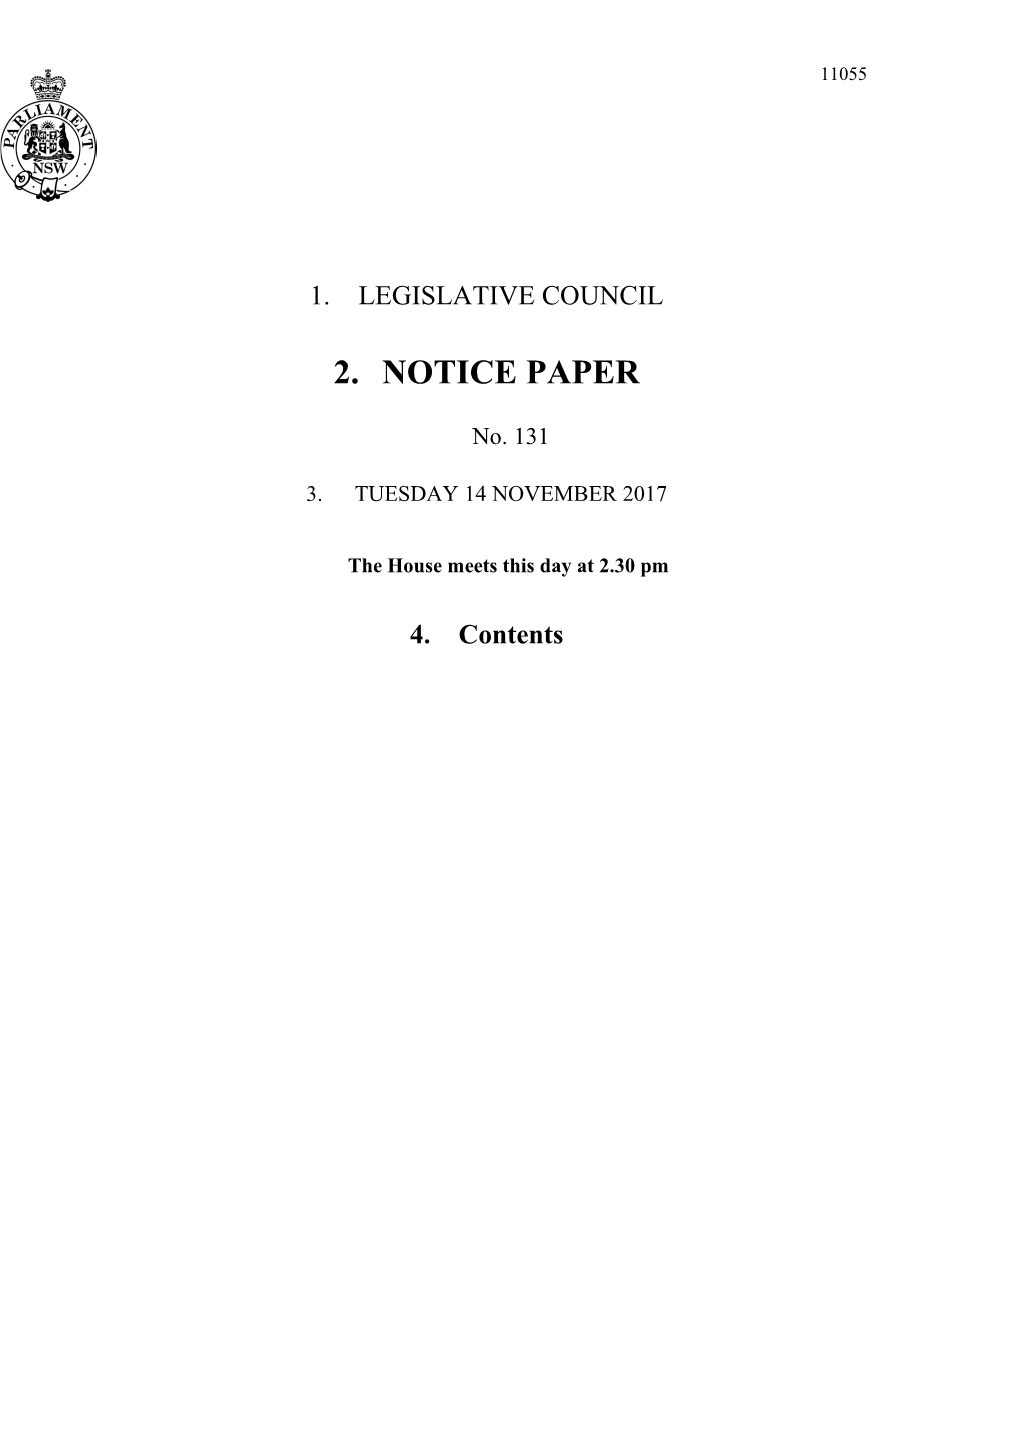 Legislative Council Notice Paper No. 131 Tuesday 14 November 2017